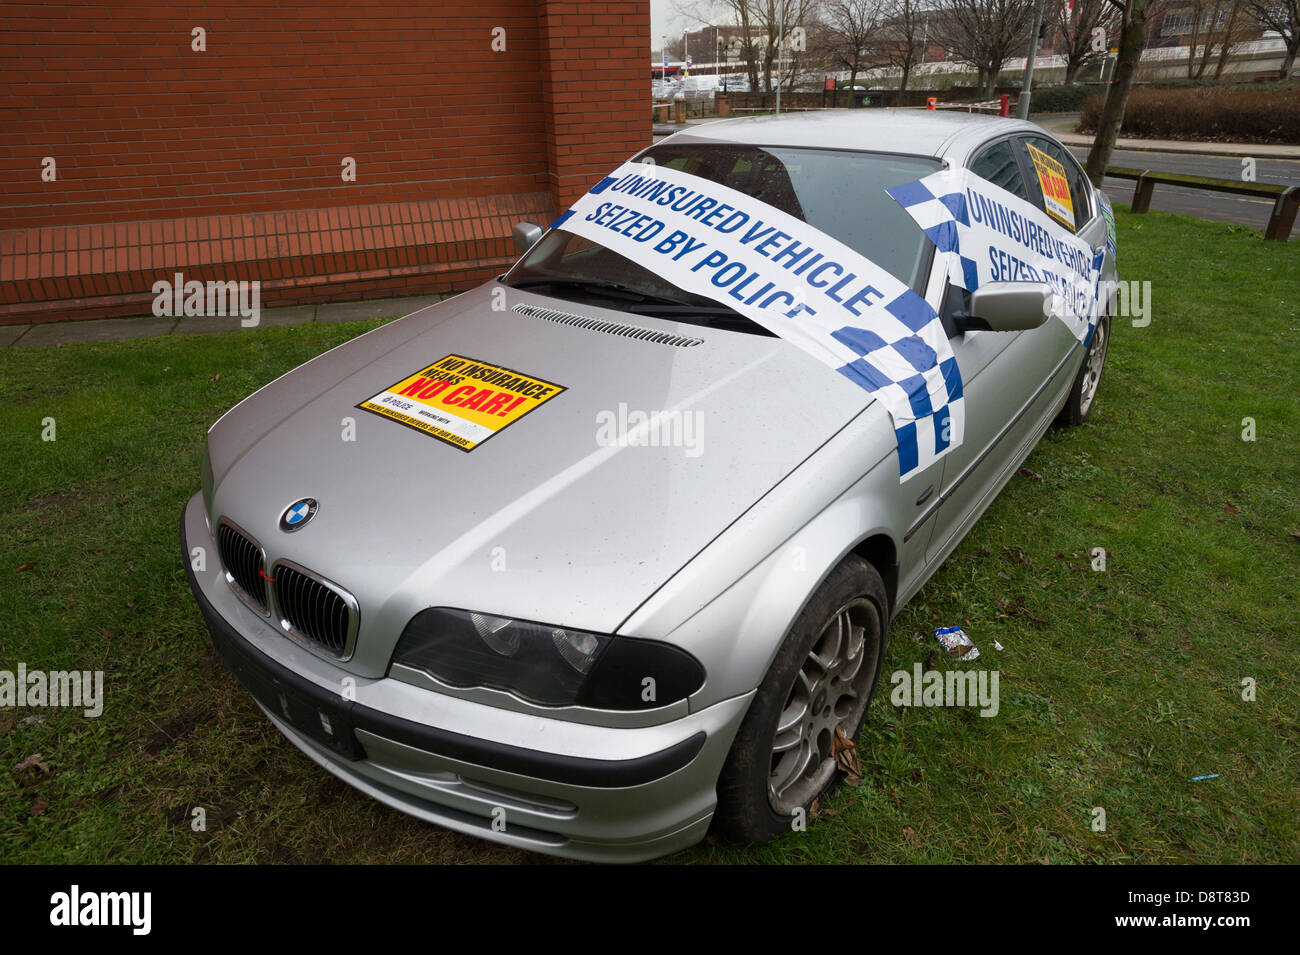 Unversicherte BMW Motor außerhalb Polizeistation beschlagnahmt Stockfoto